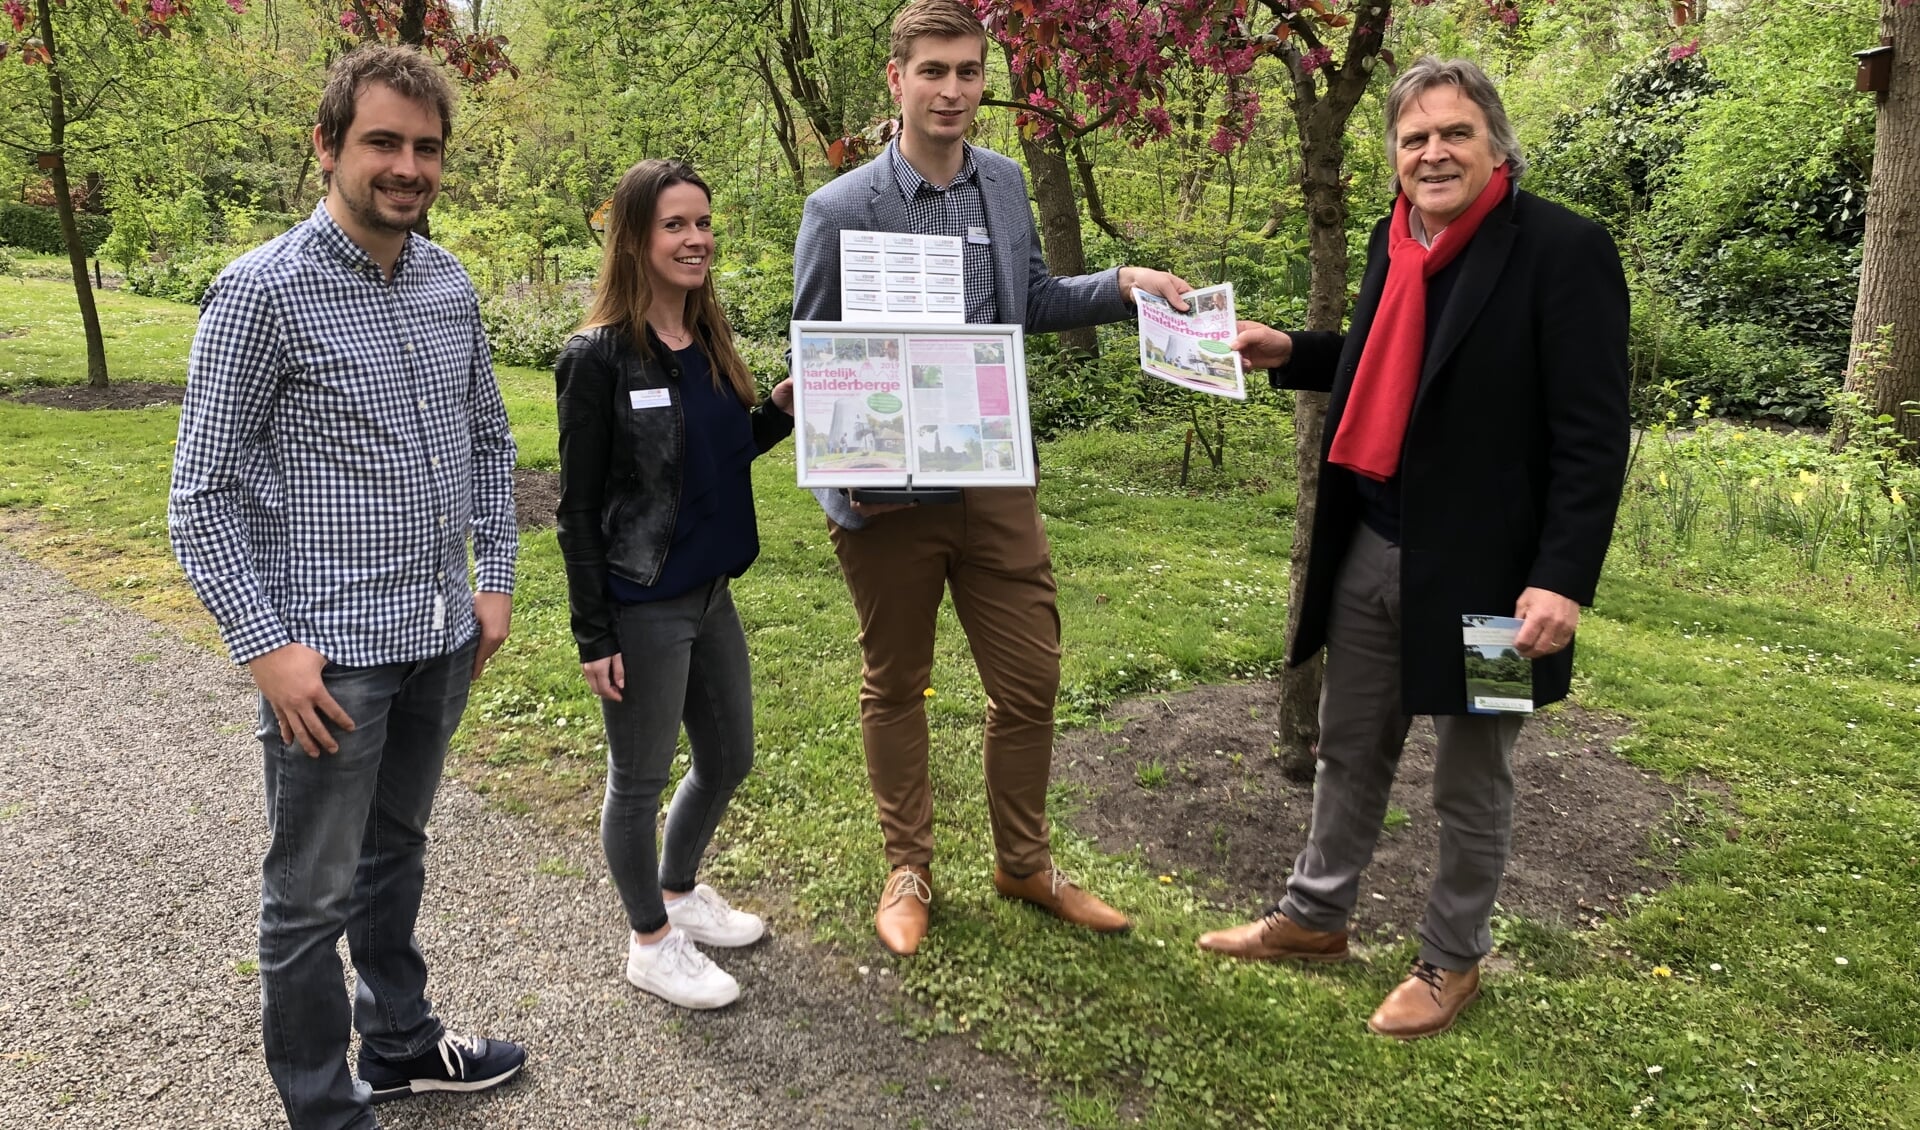 De krant wordt overhandigd door (vlnr) Jort Schoemaker, Simone Konings en Wim Hofstede aan Johan van Oosterhout  van het Arboretum. 